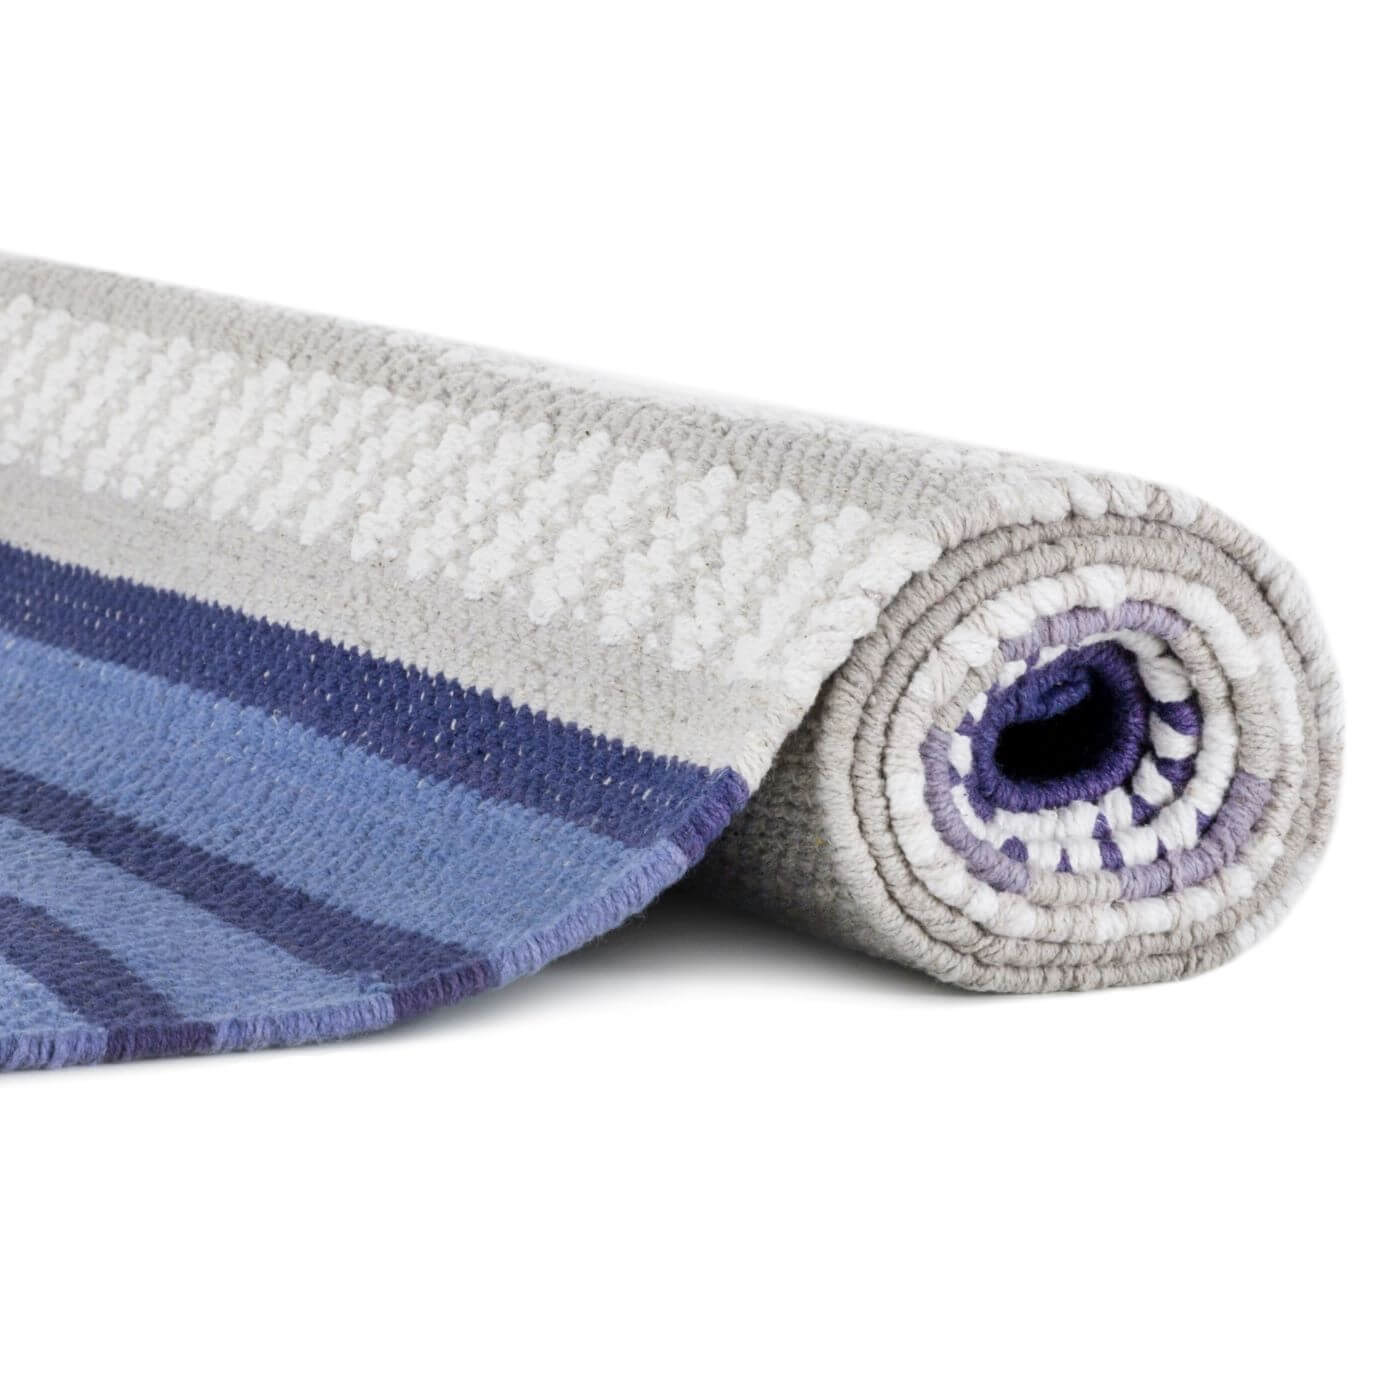 Dywan bawełniany 80x150 niebieski PALLAS. Zwinięty dywan z bawełny w szaro niebieskie pasy i paski. Styl skandynawski